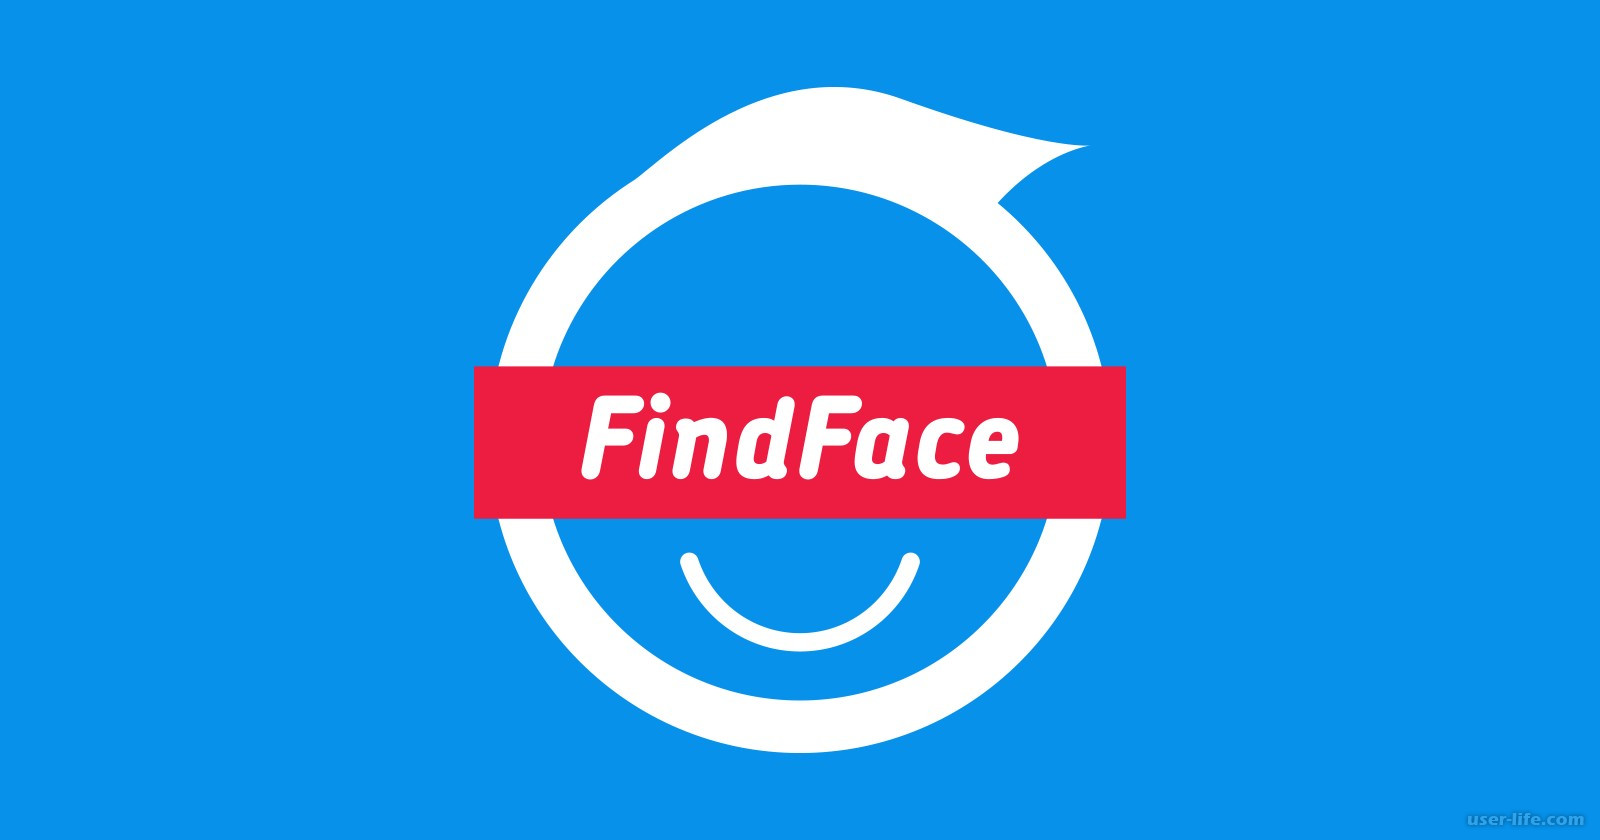 Findface Найти Человека По Фото Бесплатно Онлайн